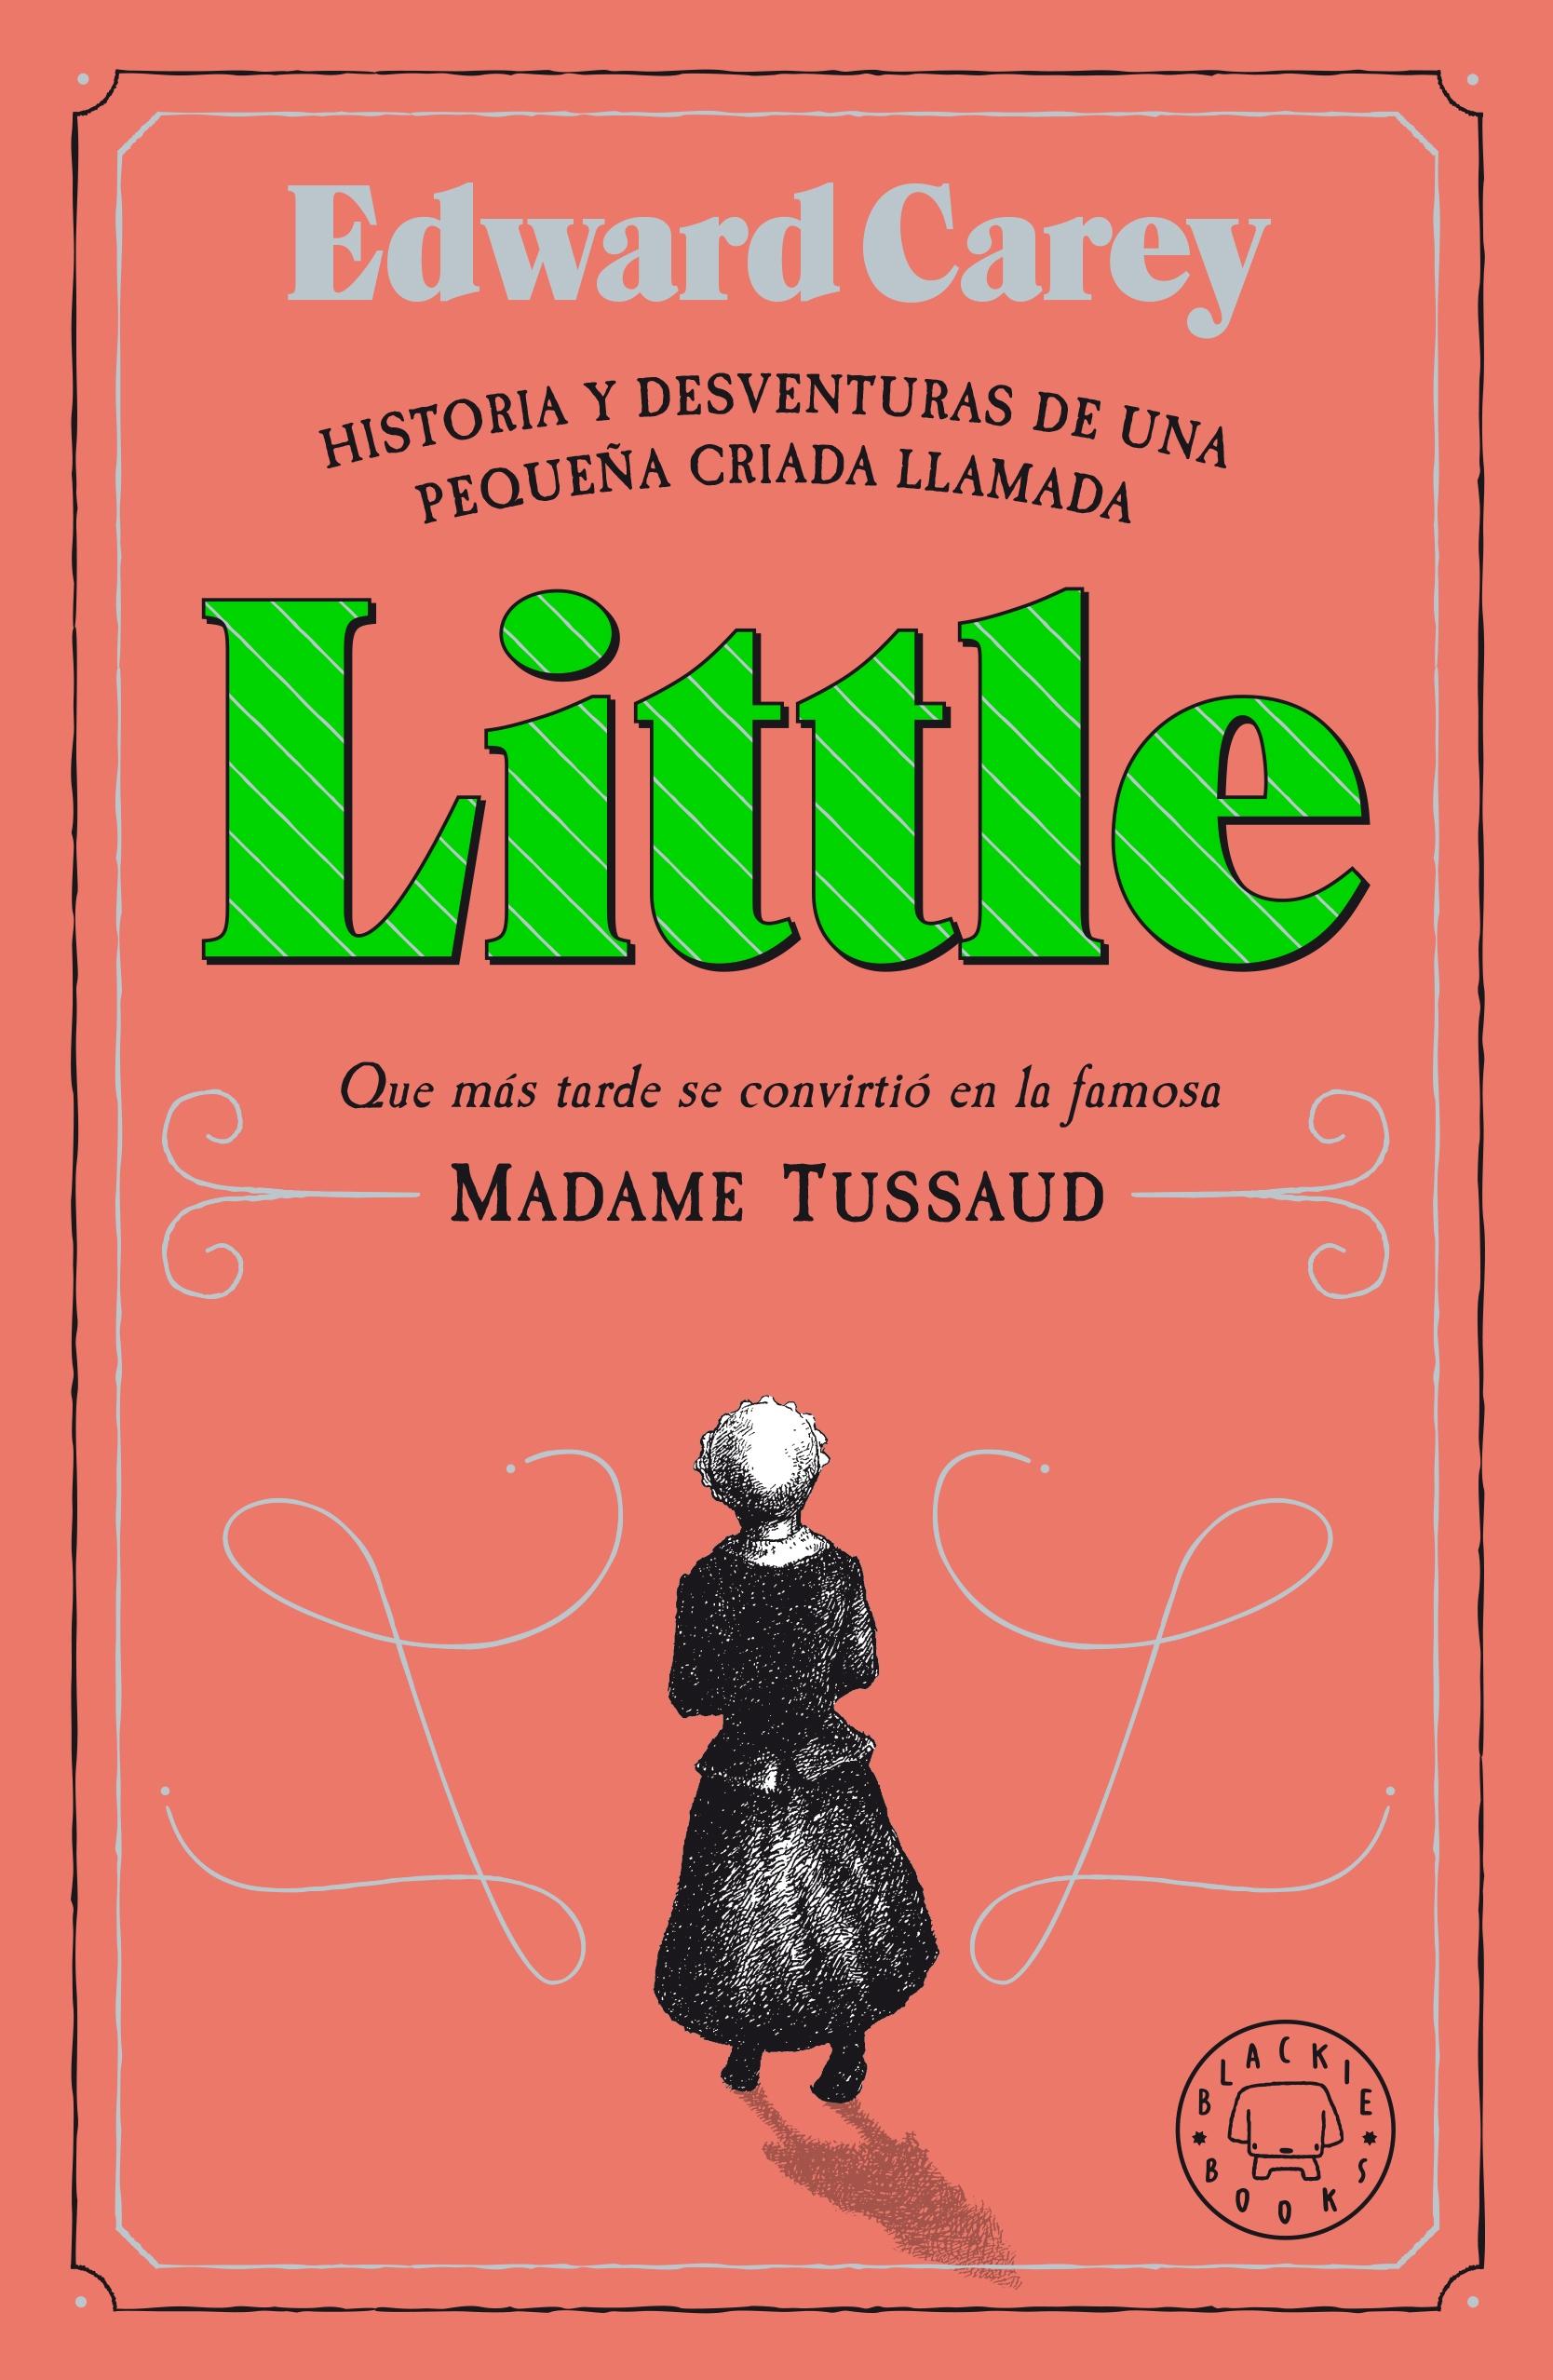 LITTLE "Historia y desventuras de una criada llamada Little que más tarde se con"